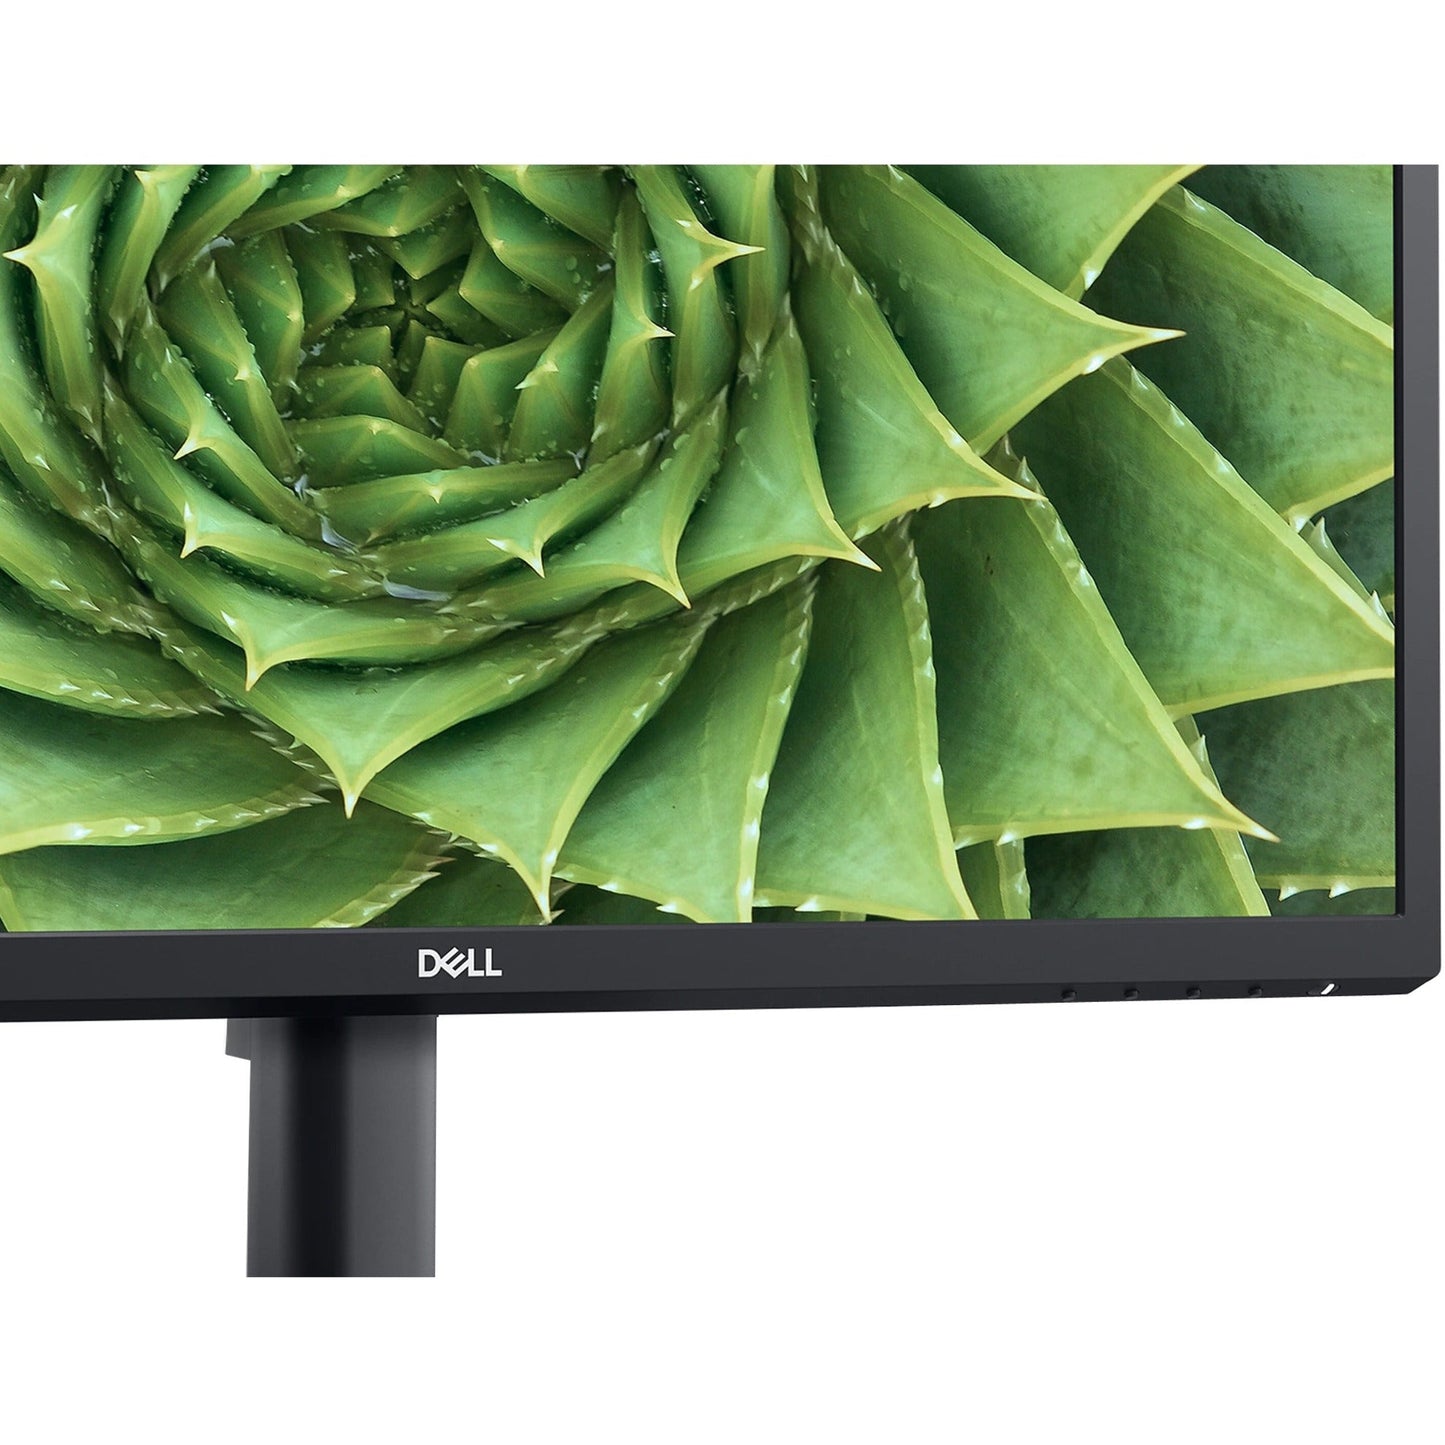 Dell E2423H 23.8" Full HD LCD Monitor - 16:9